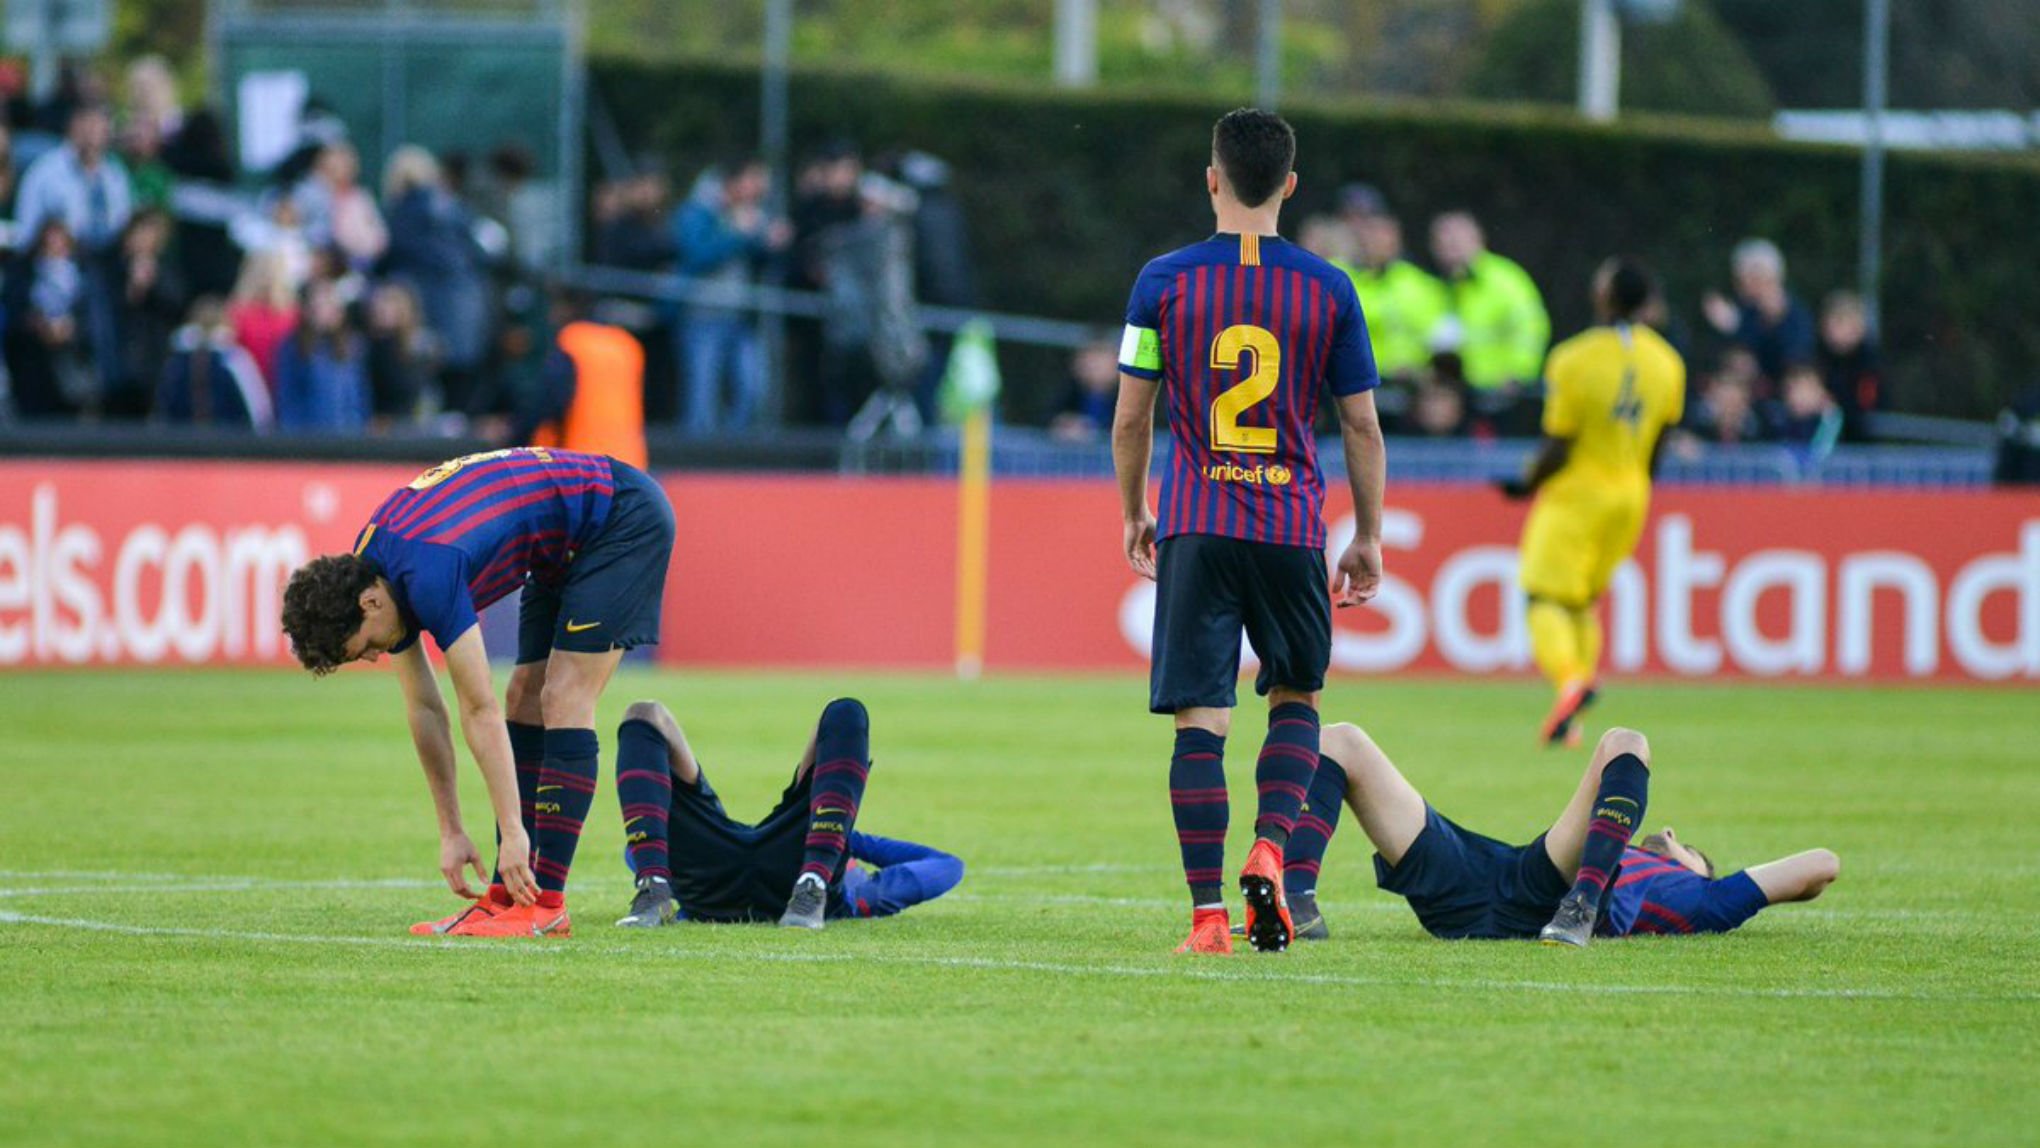 Els penals condemnen el Barça, que no jugarà la final de la Youth League (2-2)